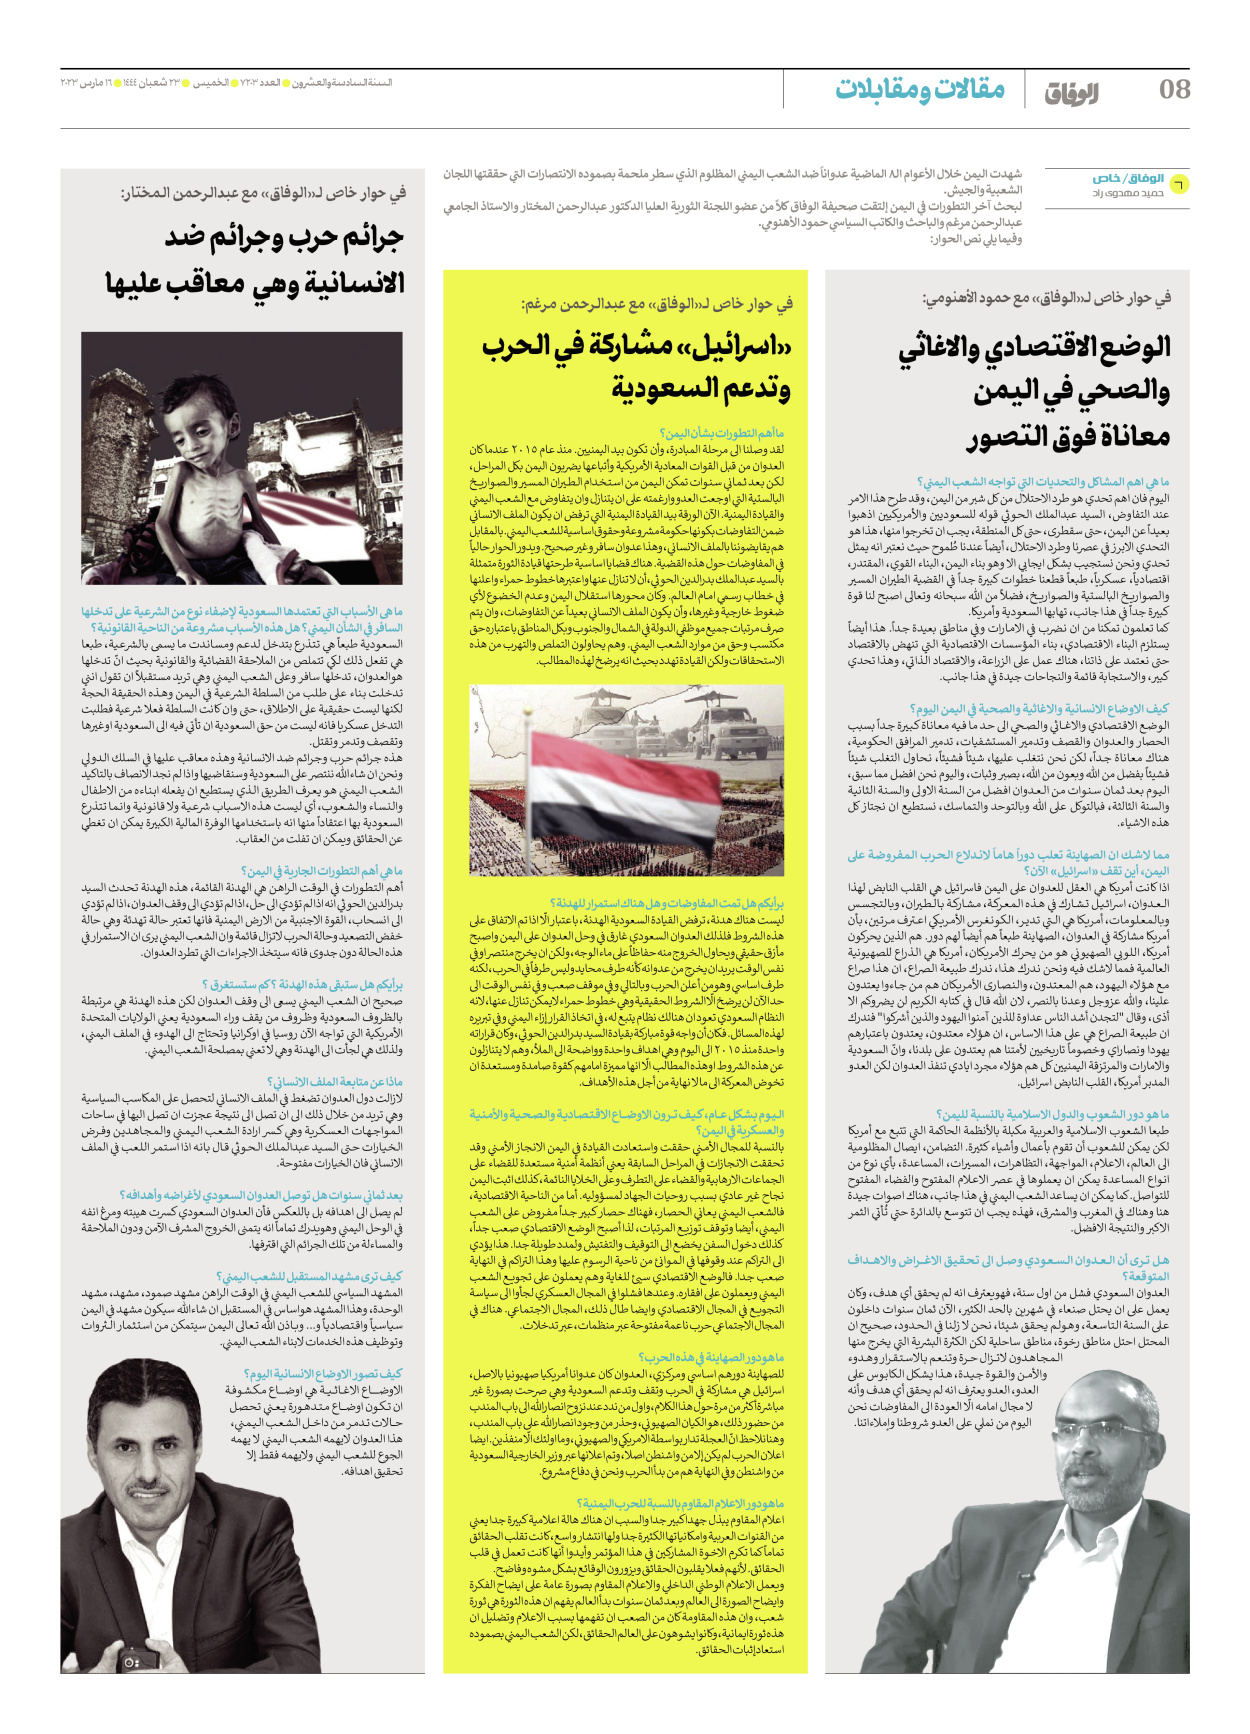 صحیفة ایران الدولیة الوفاق - العدد سبعة آلاف ومائتان وثلاثة - ١٦ مارس ٢٠٢٣ - الصفحة ۸